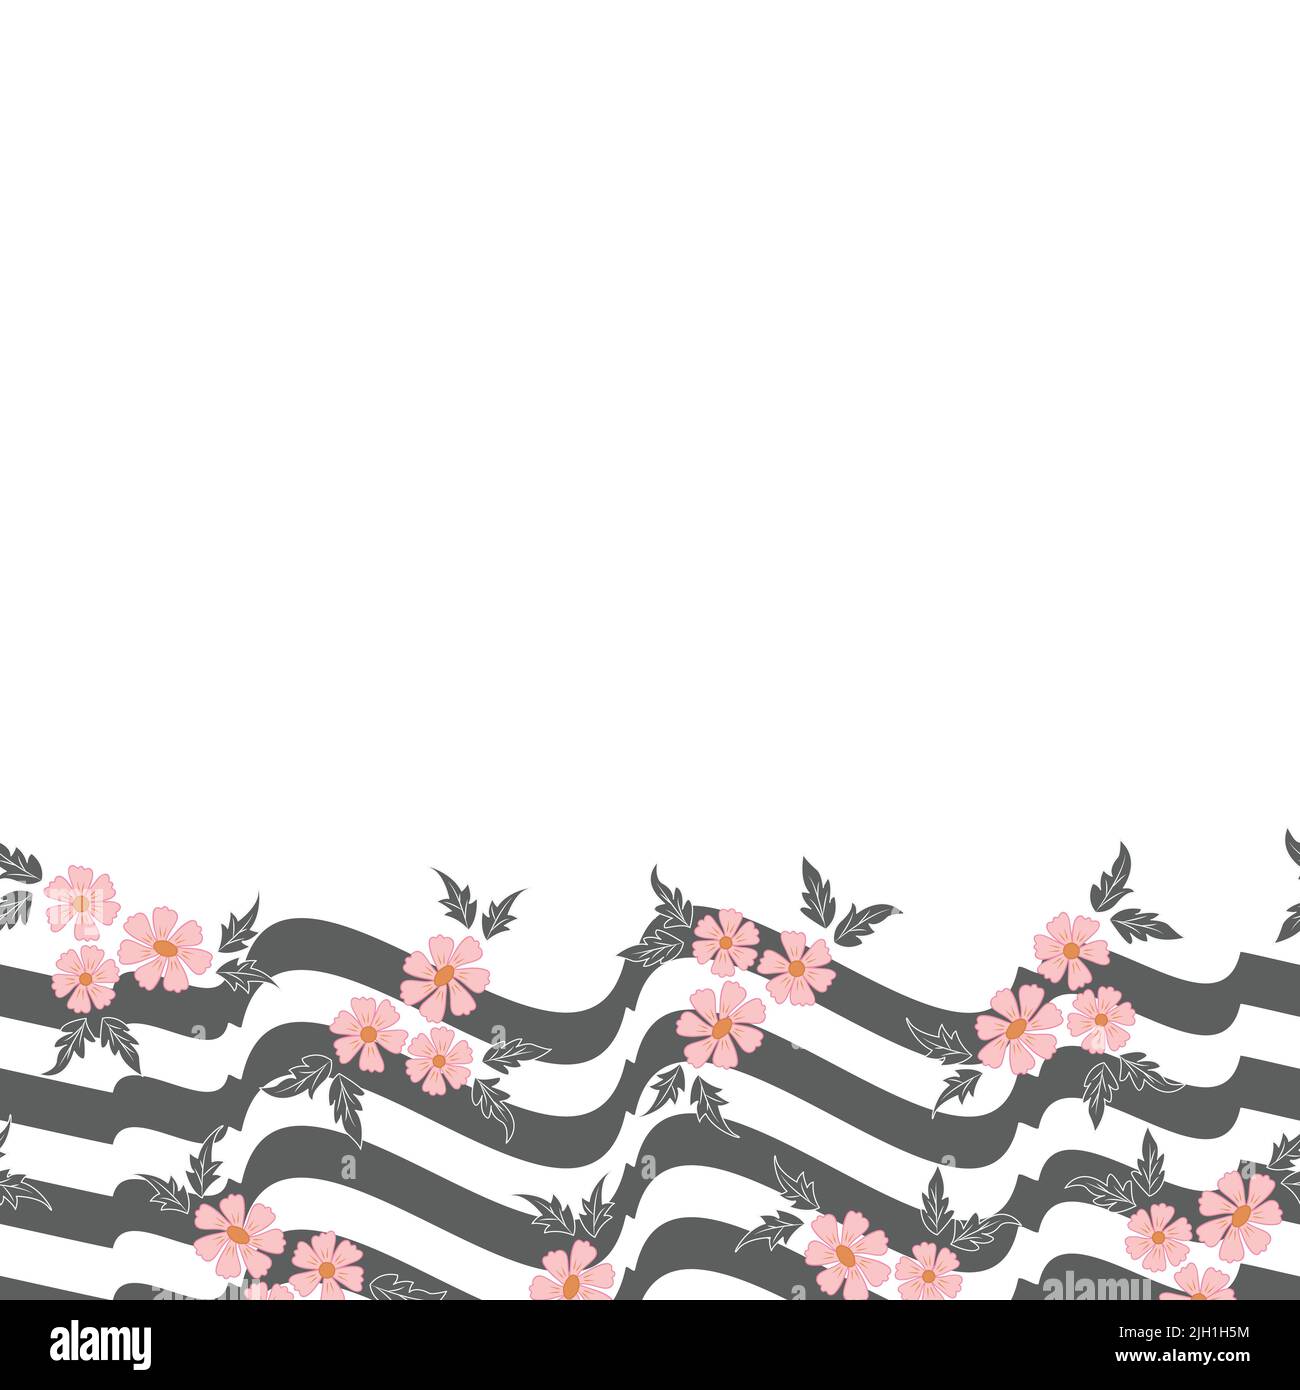 Vektor rosa Blumen mit grauen weißen welligen Zickzack-Streifen horizontalen Rand Muster Hintergrund Stock Vektor